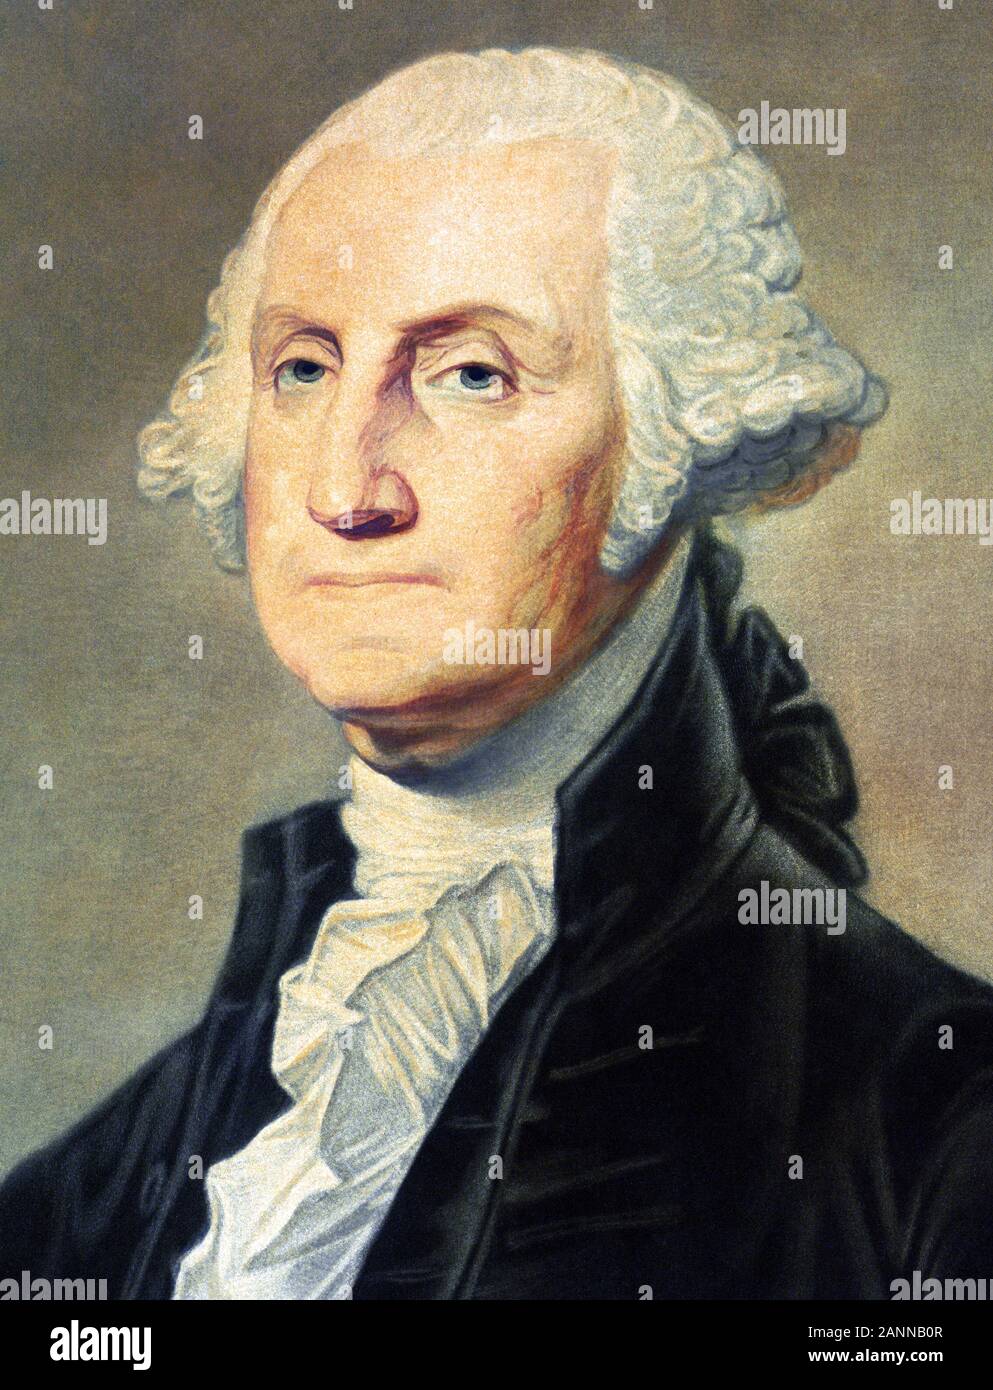 Vintage portrait de George Washington (1732 - 1799) - Commandant de l'armée continentale dans la guerre / Guerre d'indépendance (1775 - 1783) et le premier président des États-Unis (1789 - 1797). Détail de l'imprimé vers 1813 par Freeman de Philadelphie. Banque D'Images